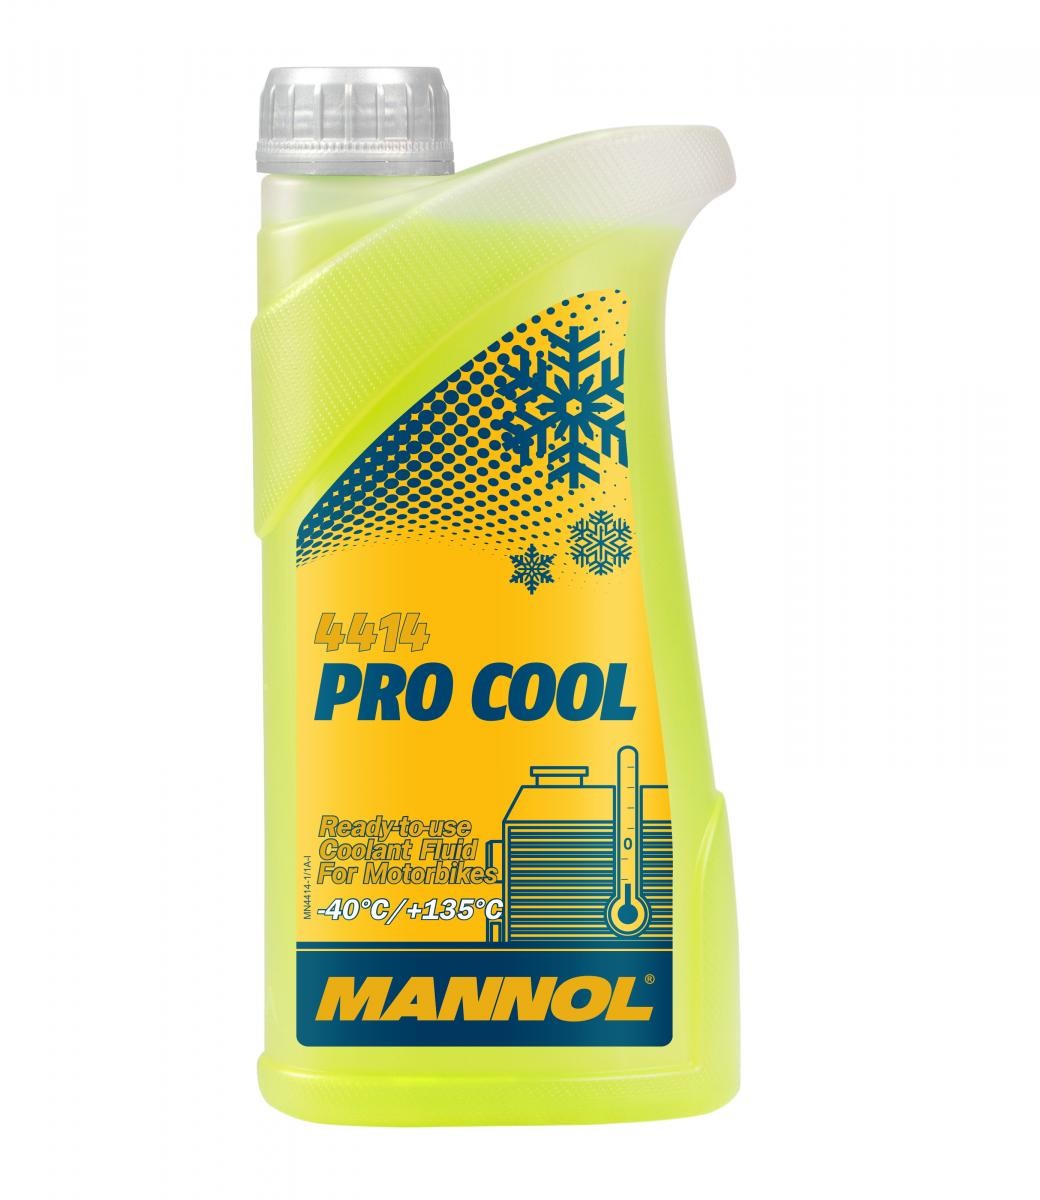 MANNOL MN4414-1 Ochrona przed zamarzaniem tanio w sklep online